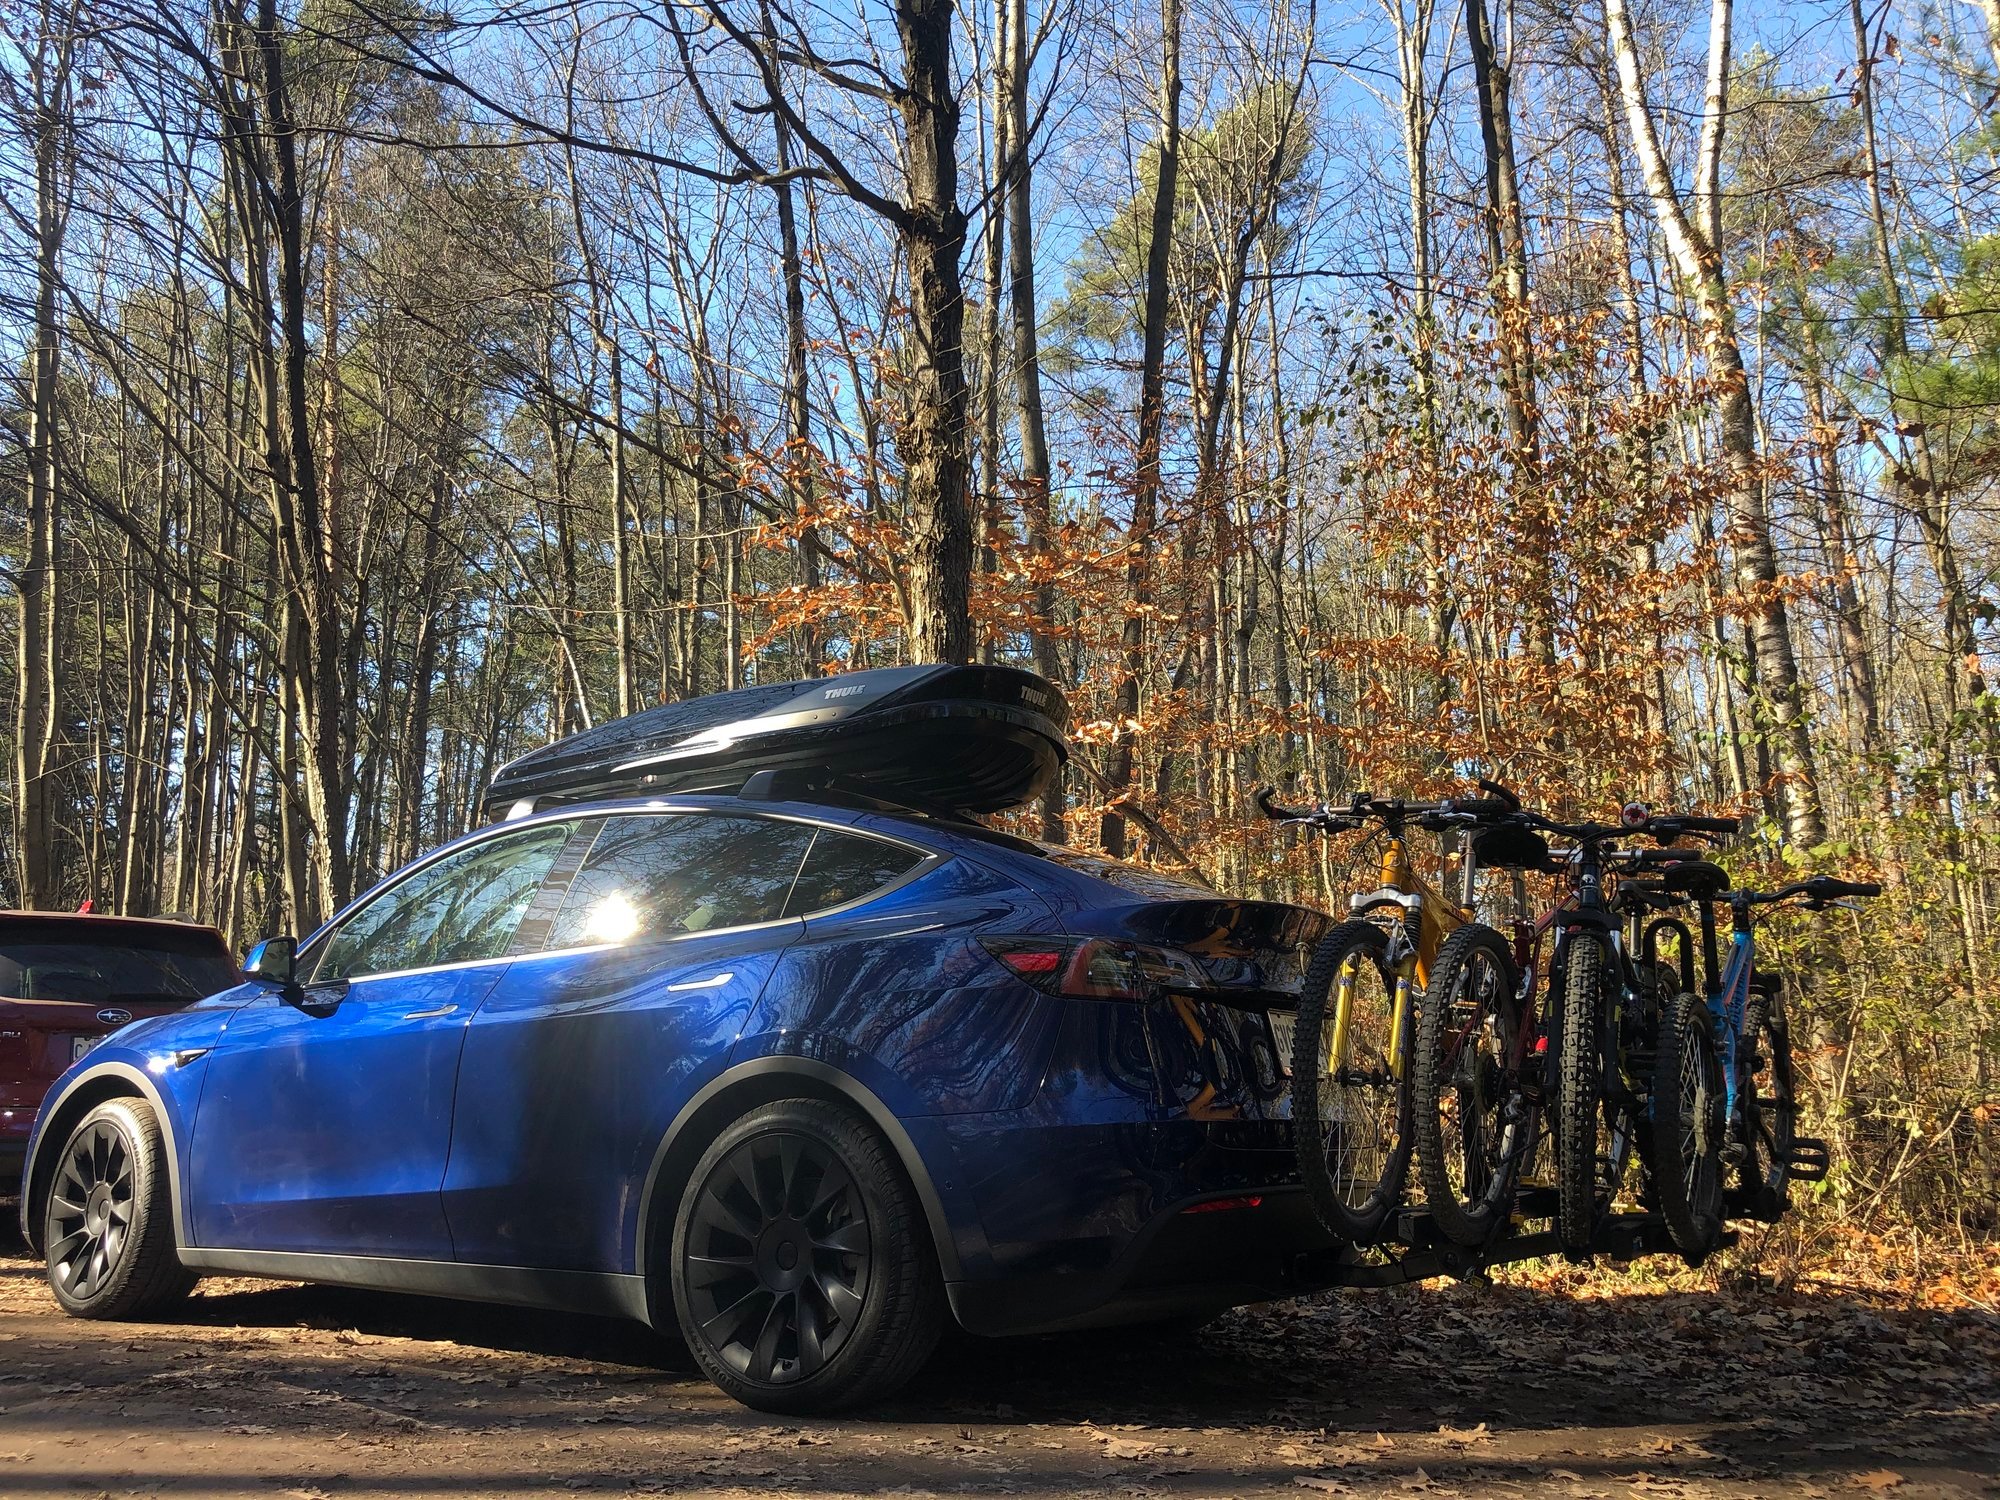 Kuat bike rack video for the Model Y | Tesla Motors Club